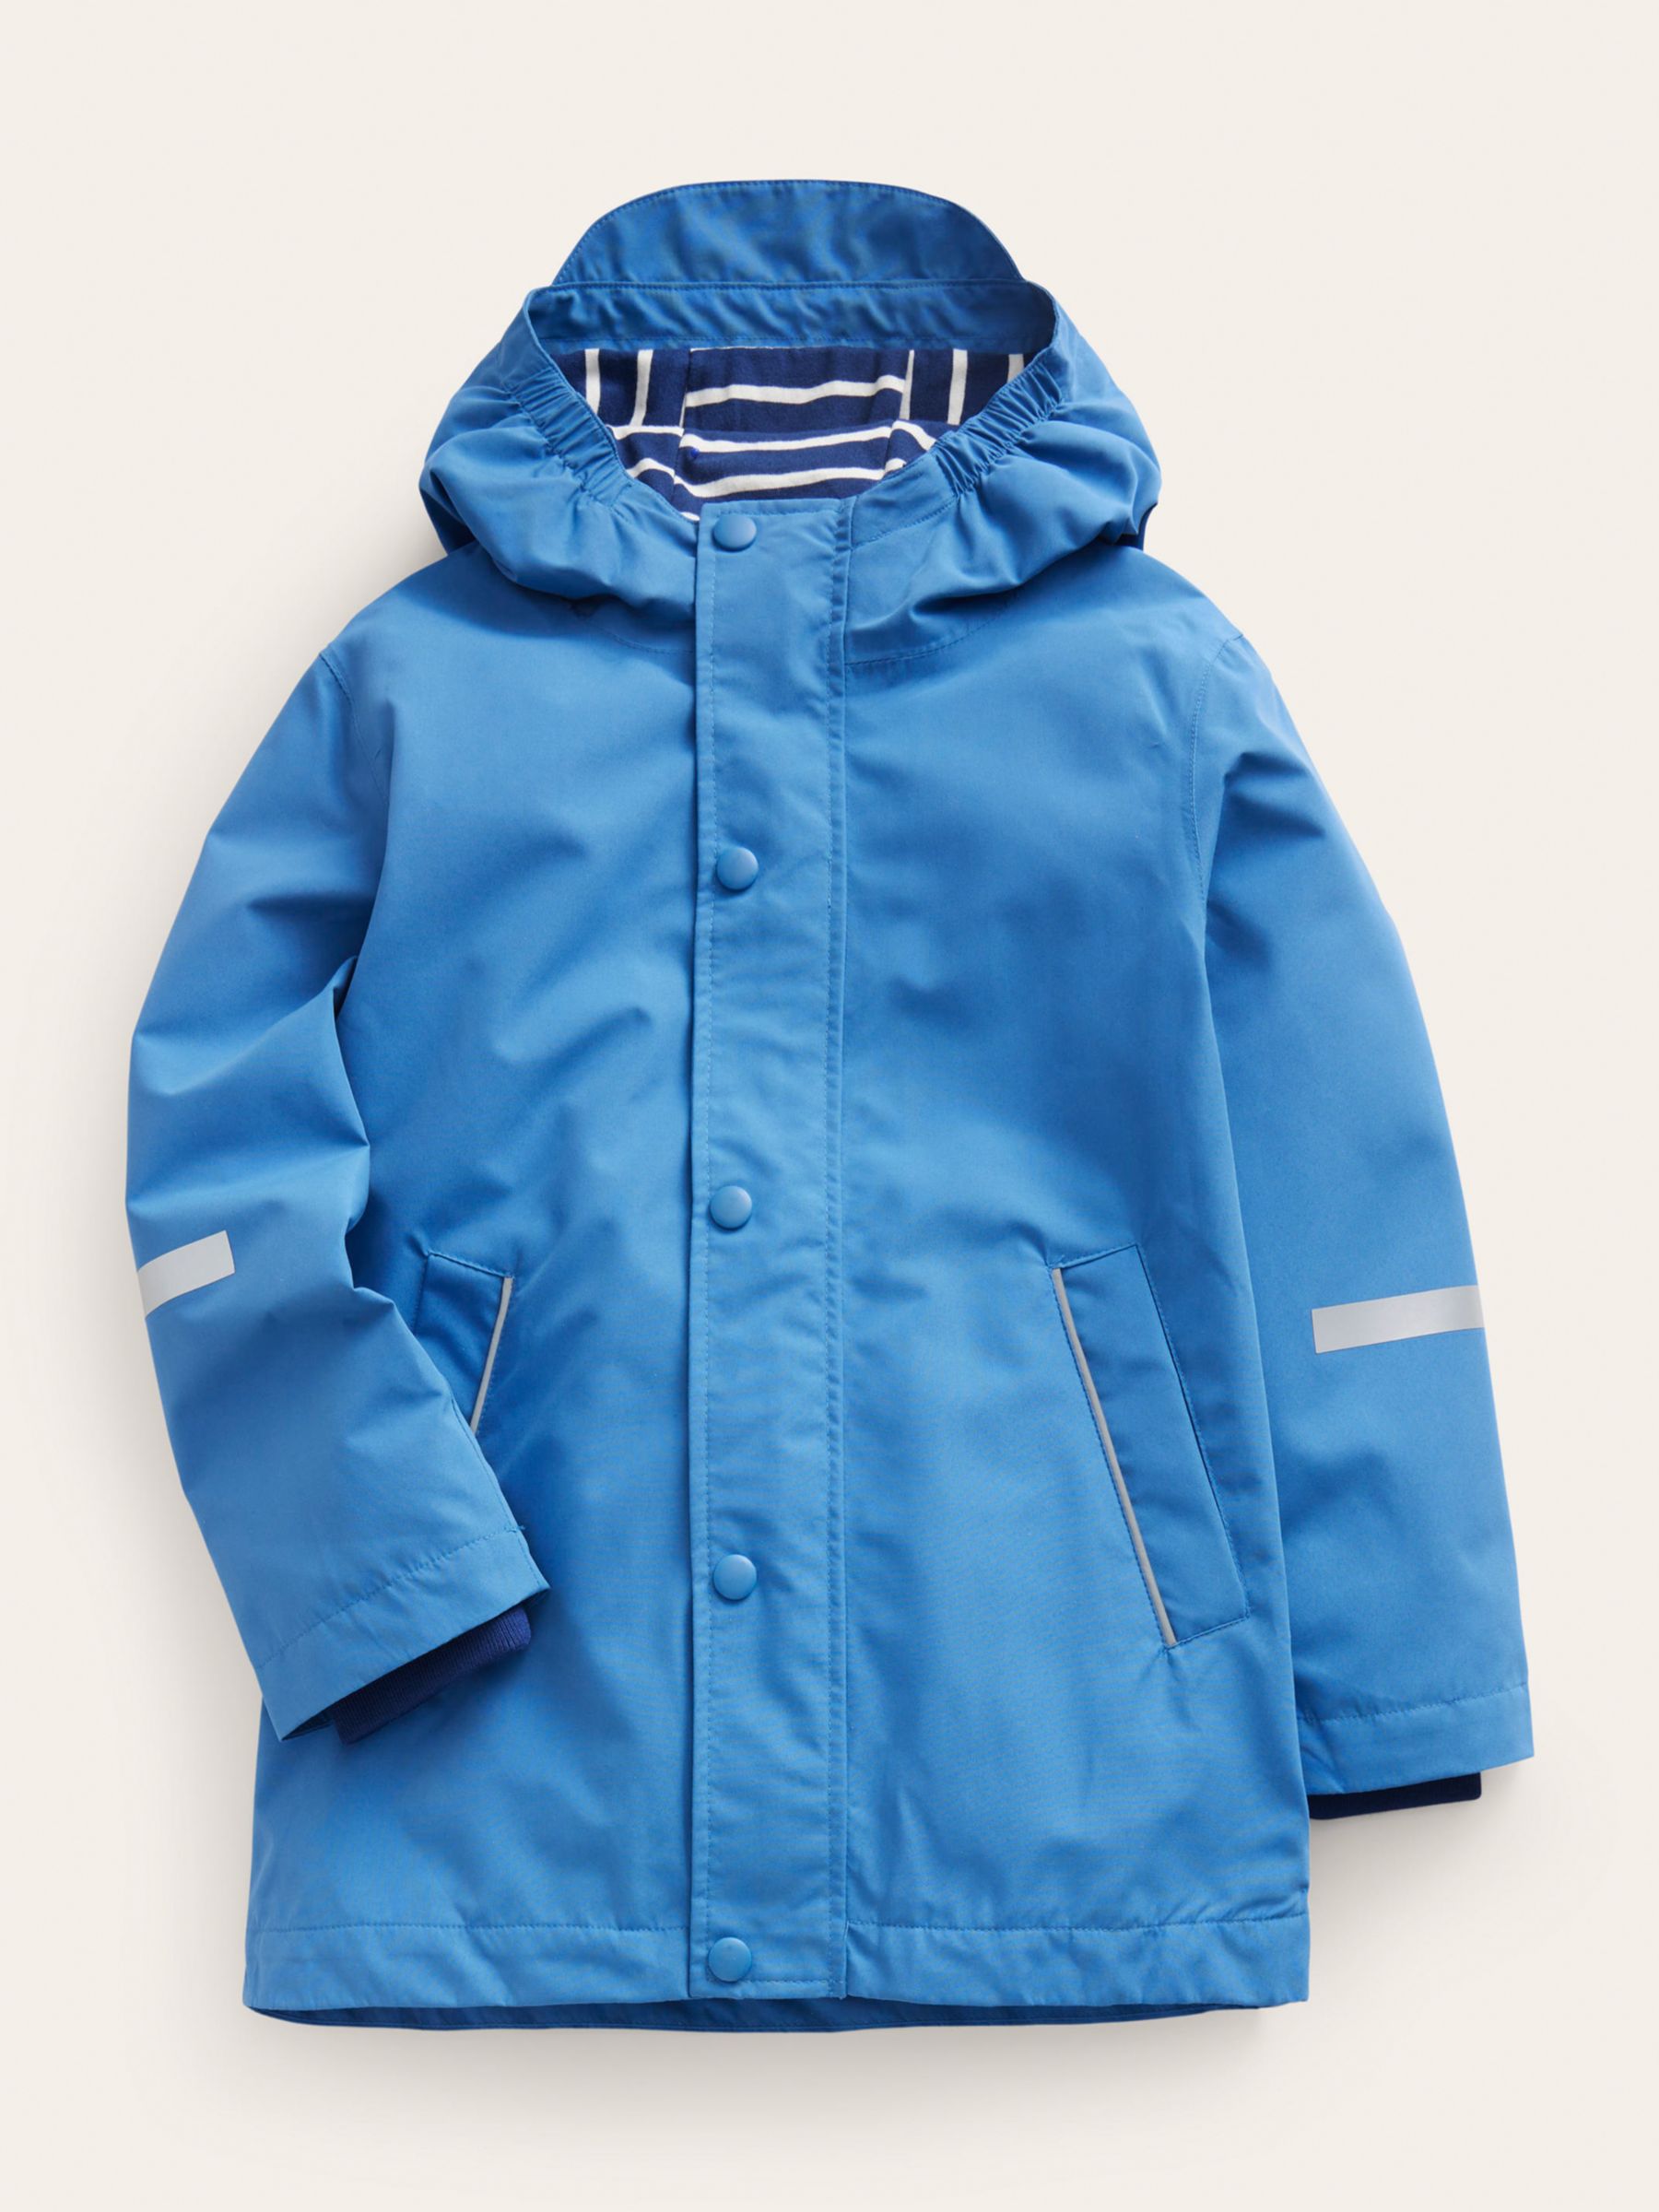 Mini Boden Kids' Waterproof Fisherman Jacket, Delft Blue